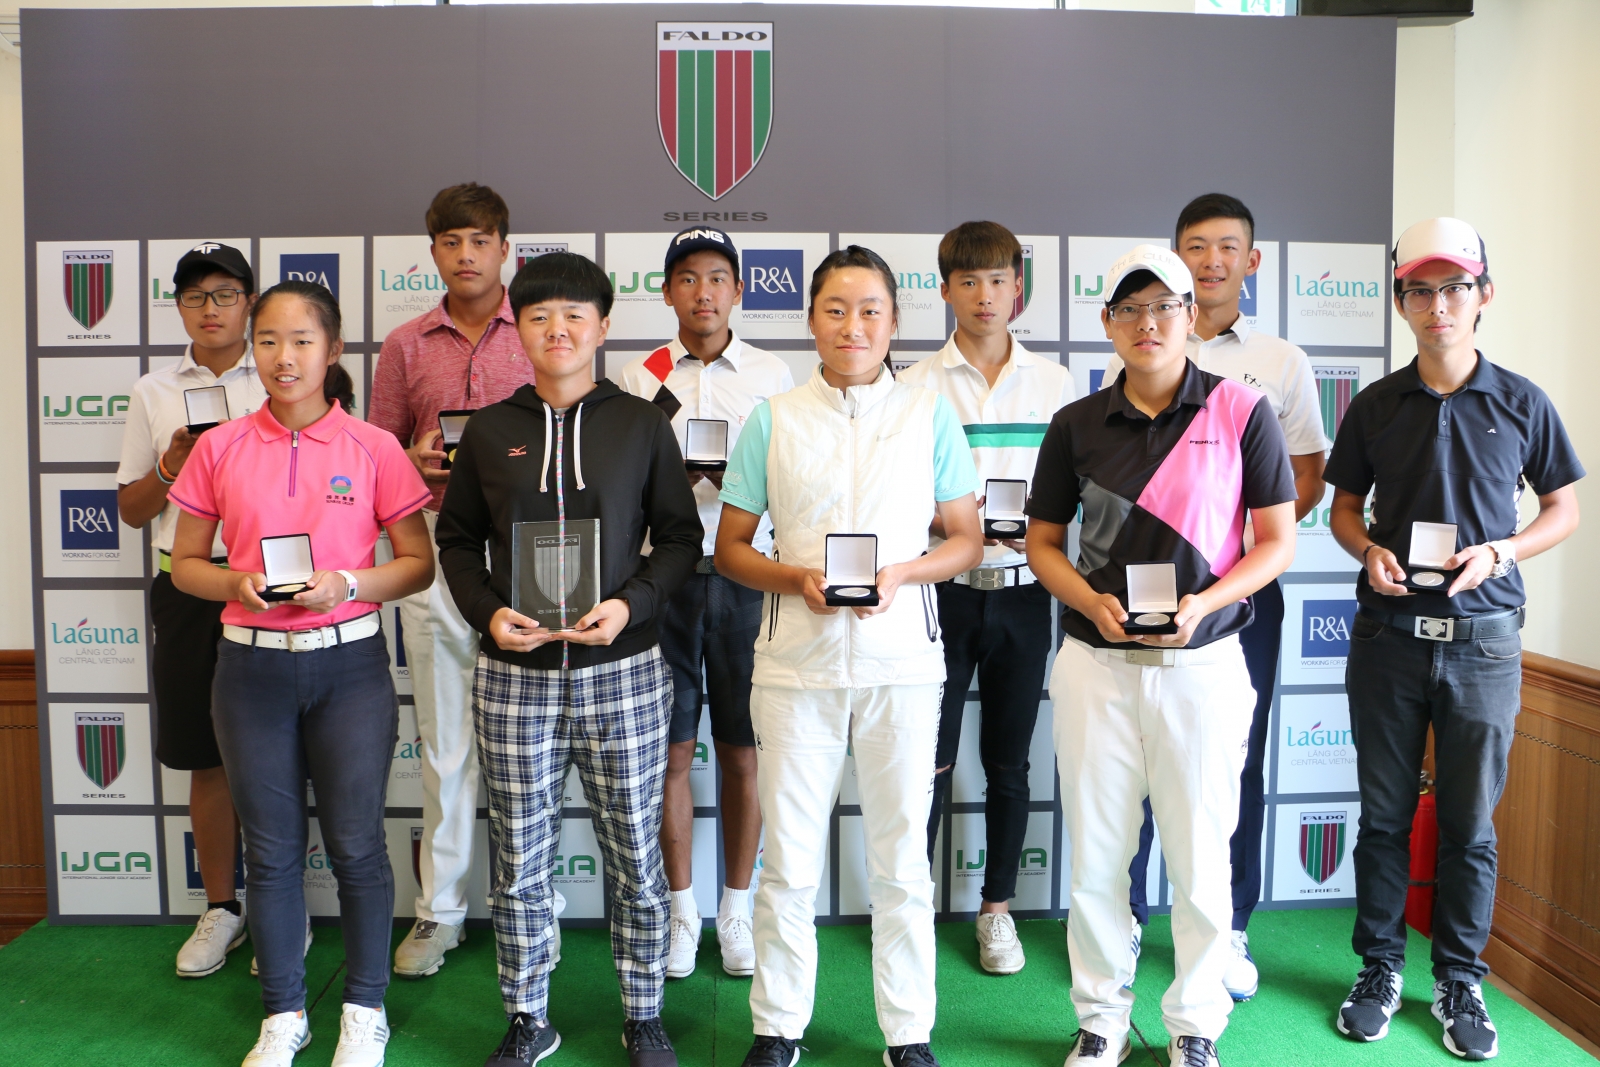 揚昇培訓球員葉家儒(前排左一)於佛度盃亞洲系列賽台灣站－2018年第13屆佛度盃台灣錦標賽中勇奪女子U16組冠軍。